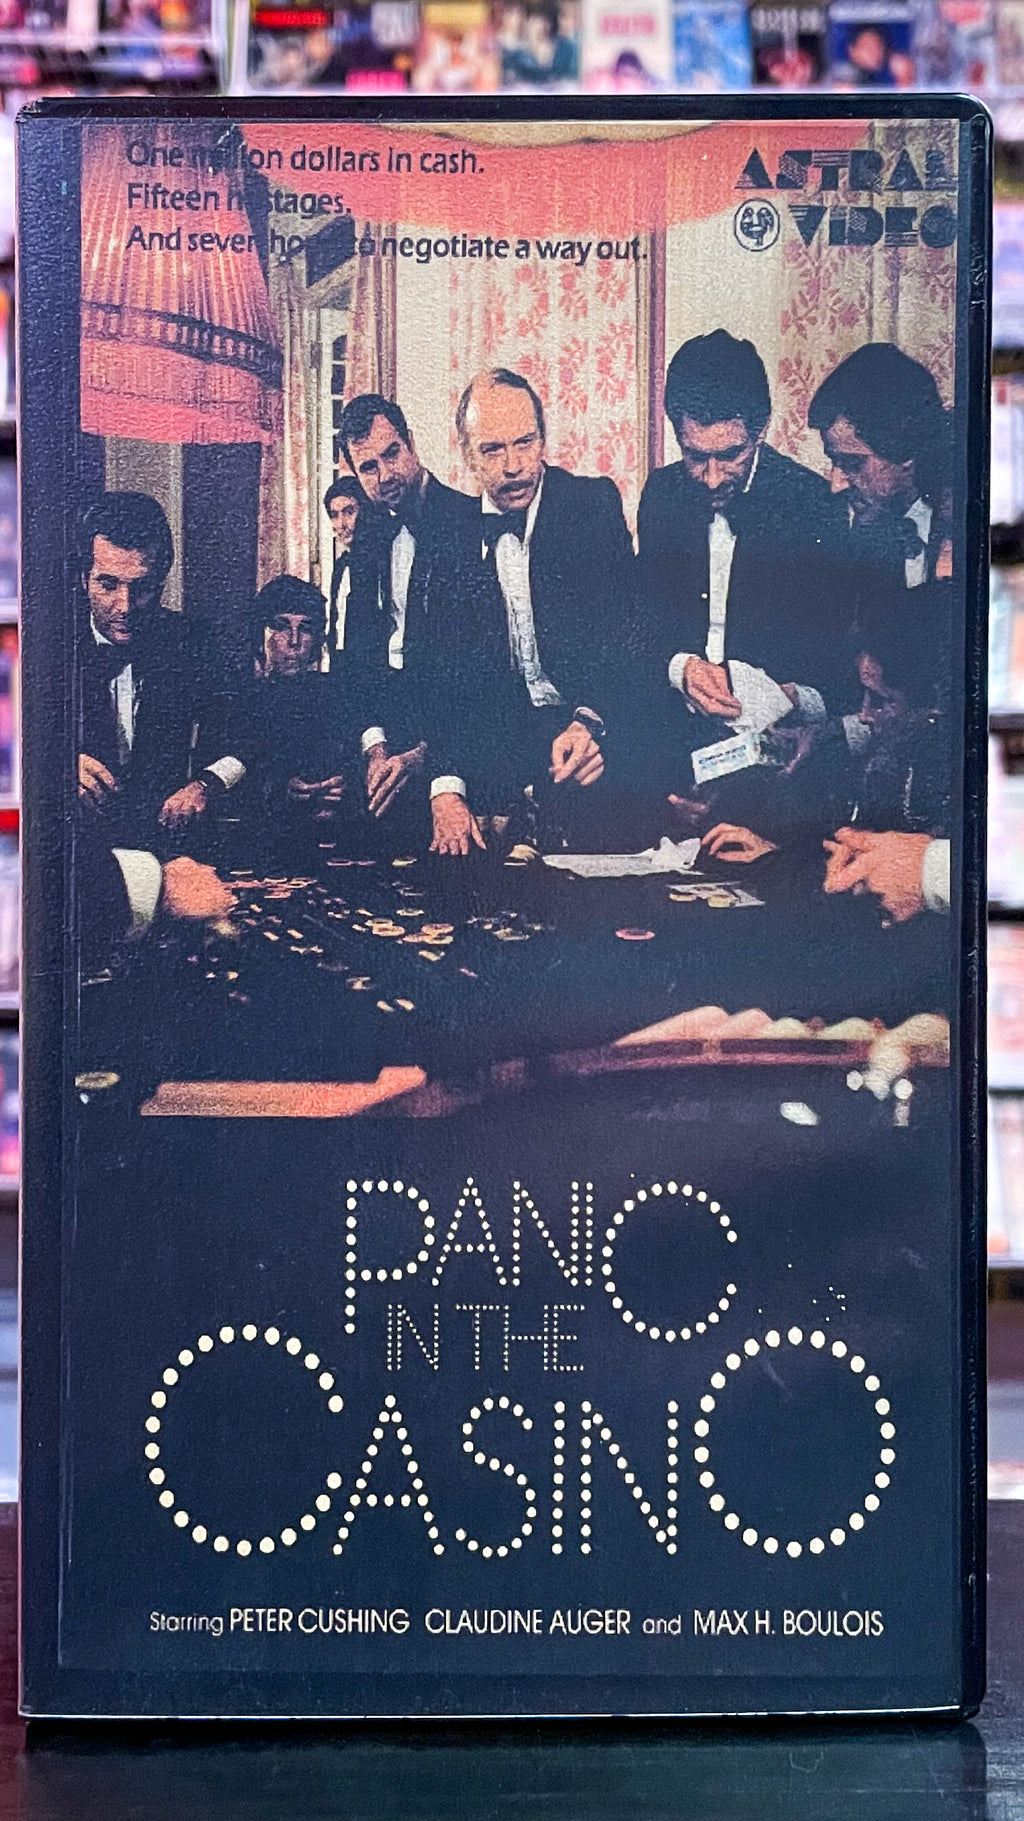 Panic In The Casino